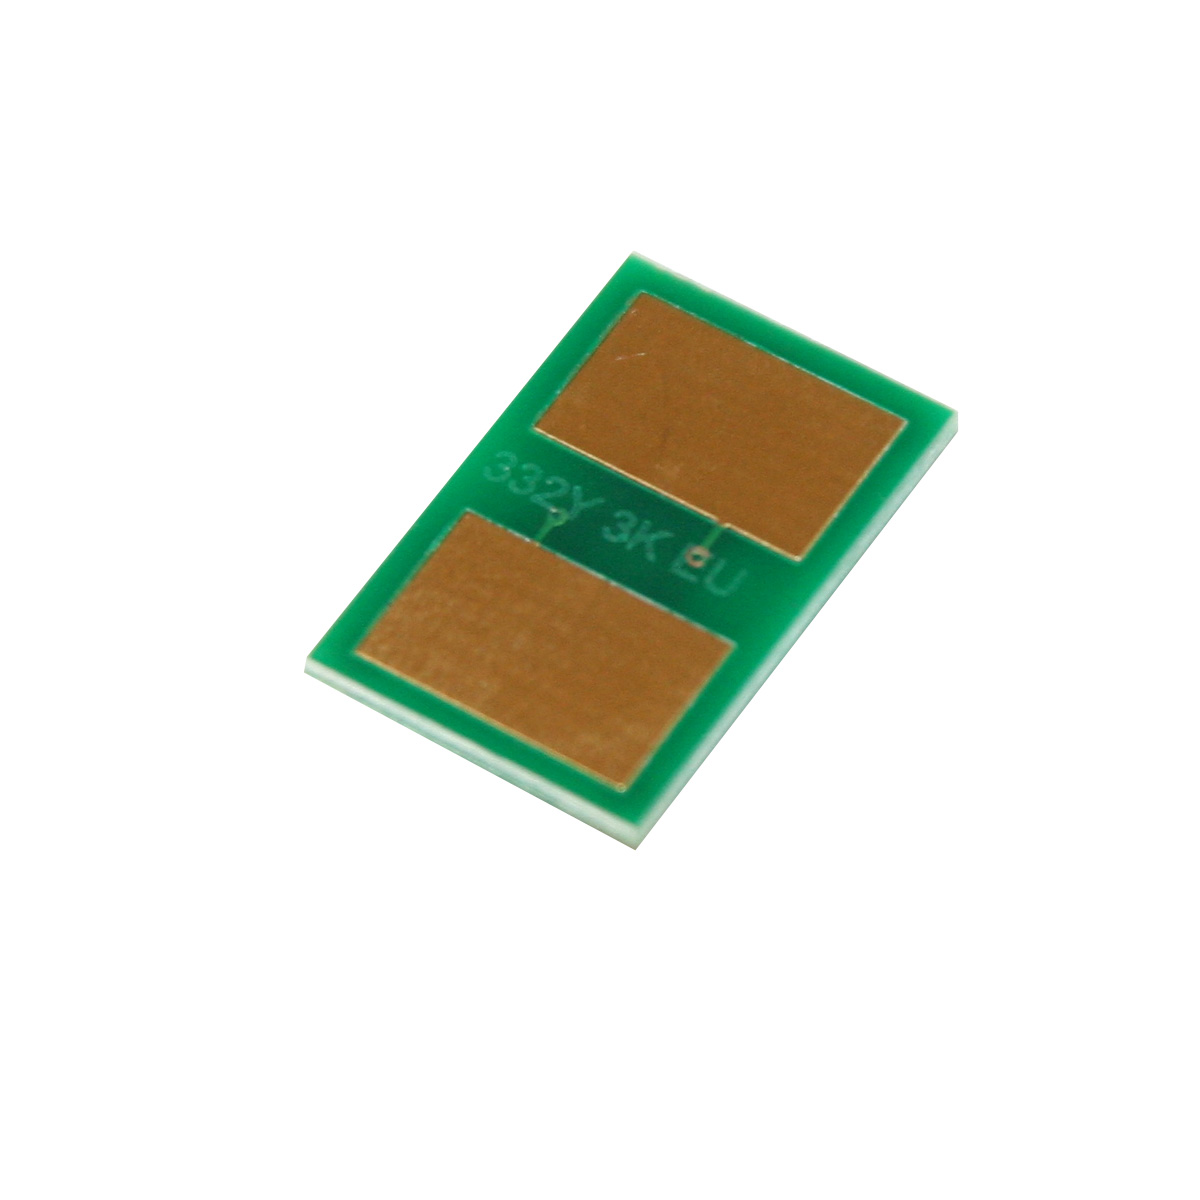 Chip zliczający OKI MC 363